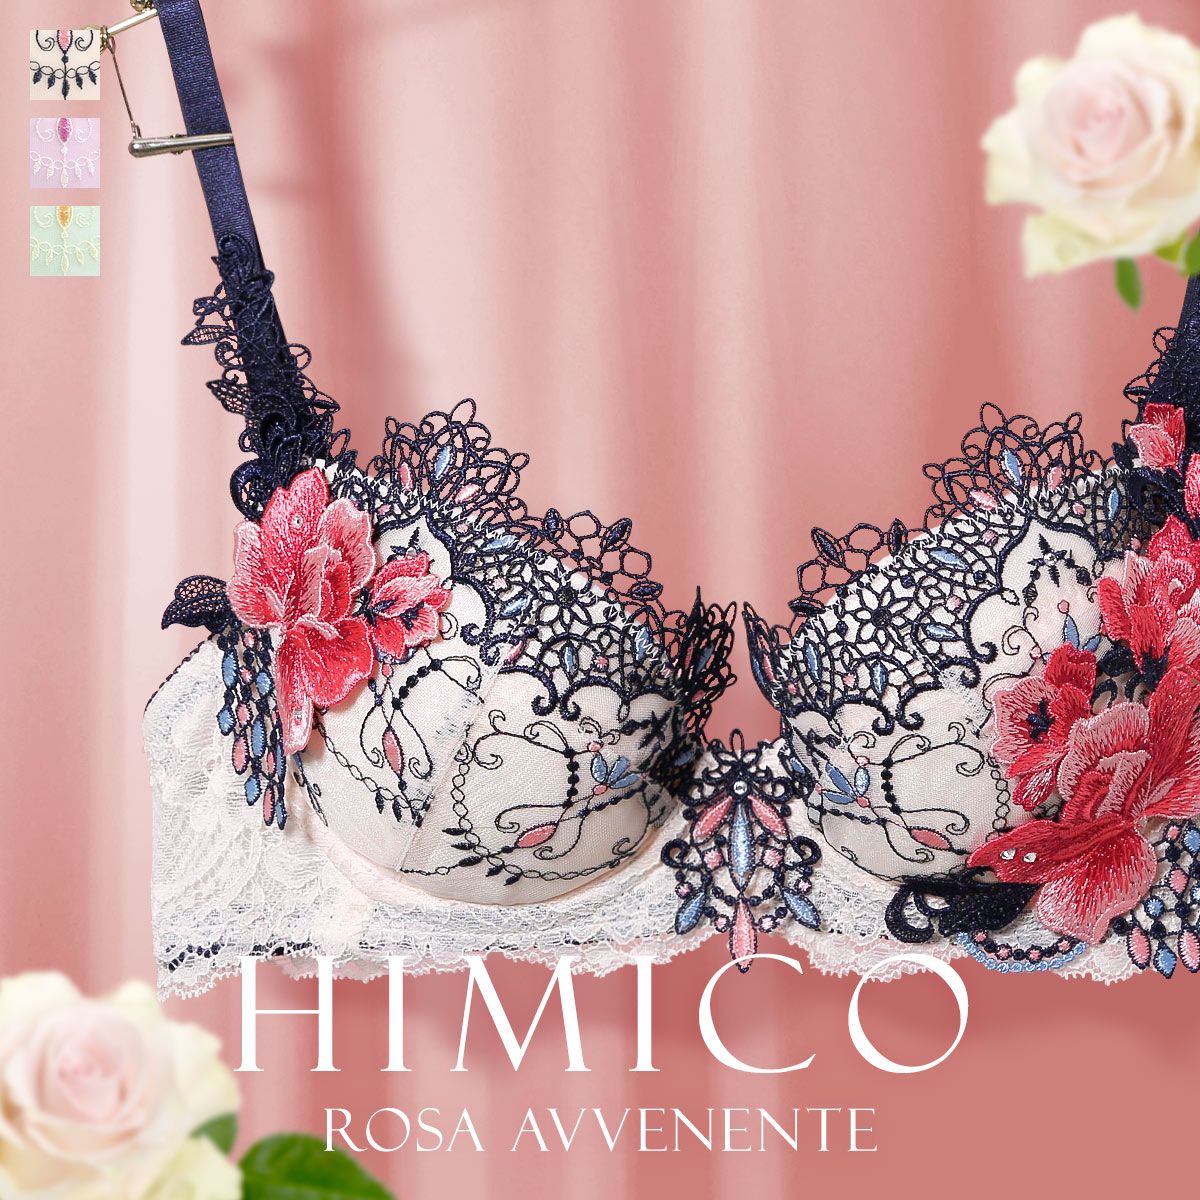 【送料無料】 HIMICO 美しい薔薇の魅力漂う Rosa Avvenente ブラジャー BCDEF 021series 単品